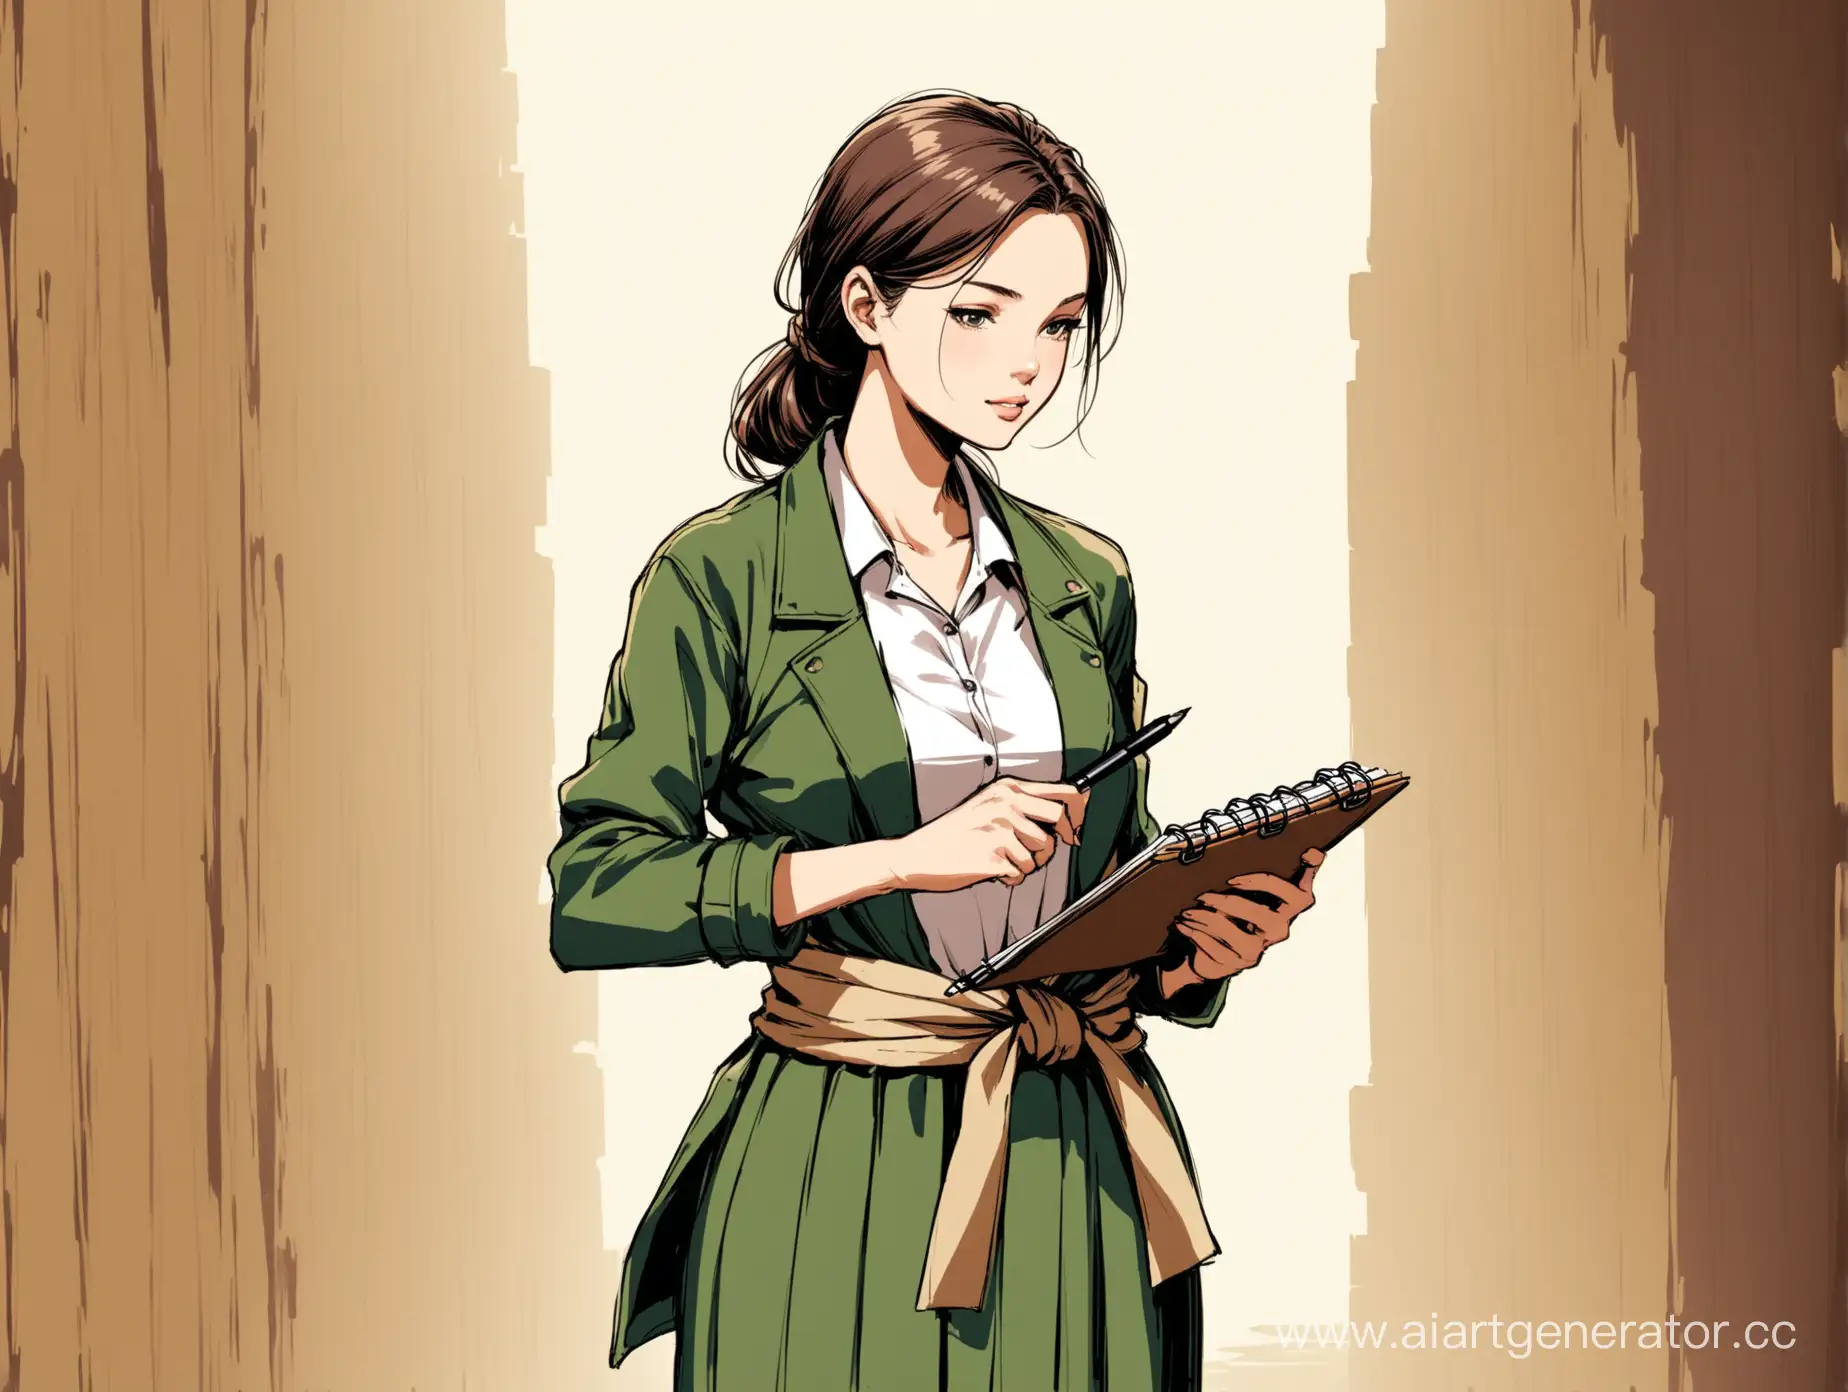 нарисованный женщина с блокнотом и ручкой в руках по пояс в пиджаке в примитивном стиле
